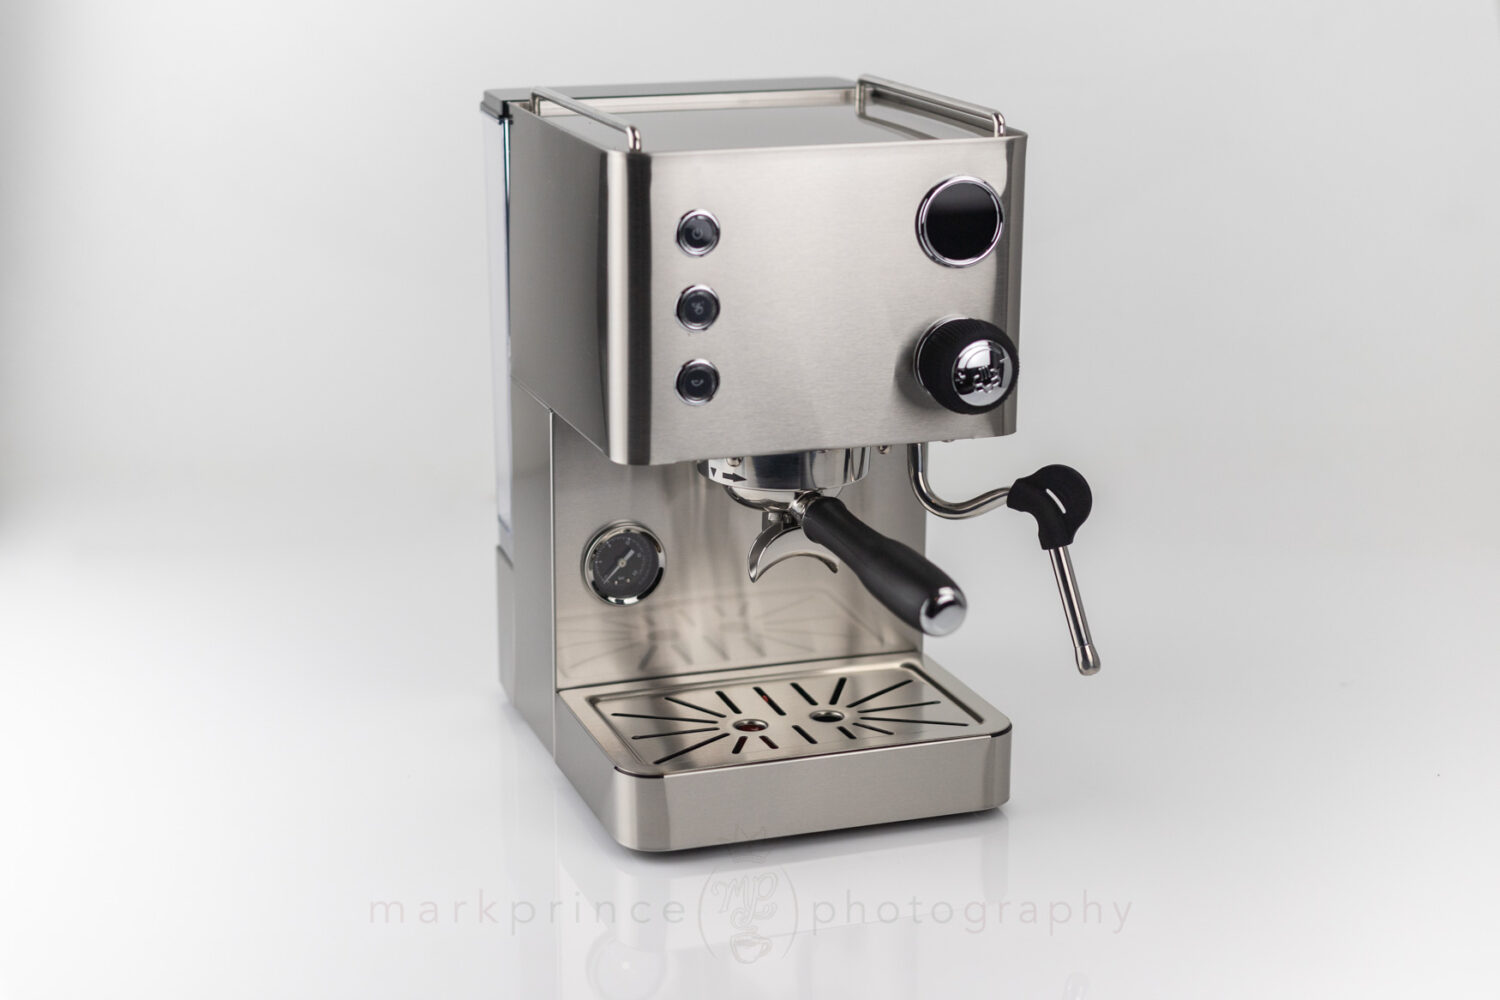 Turin Legato Espresso Machine